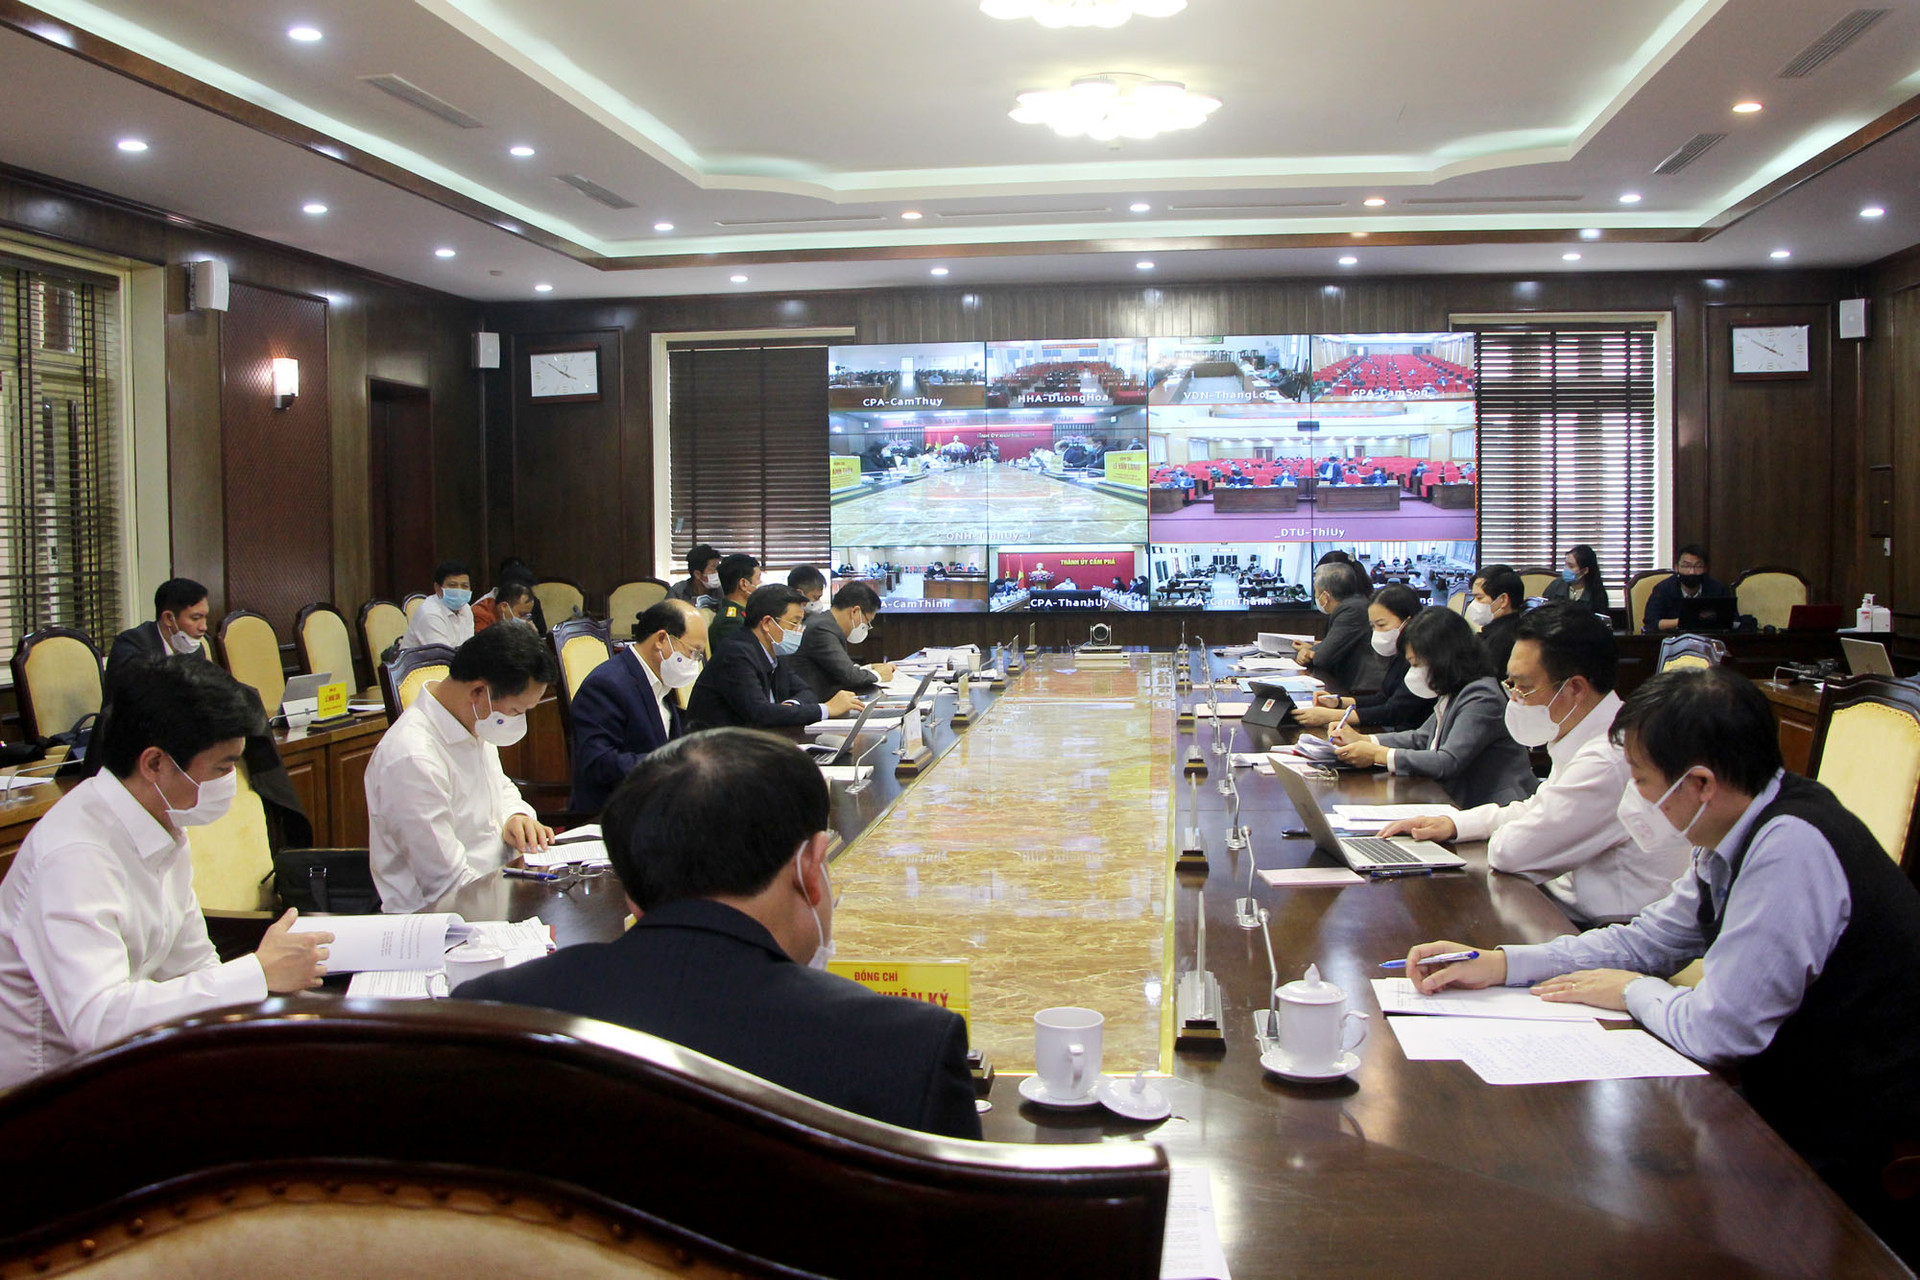 Hội nghị được trực tuyến đến cấp huyện, cấp xã trong toàn tỉnh. Ảnh: Báo Quảng Ninh